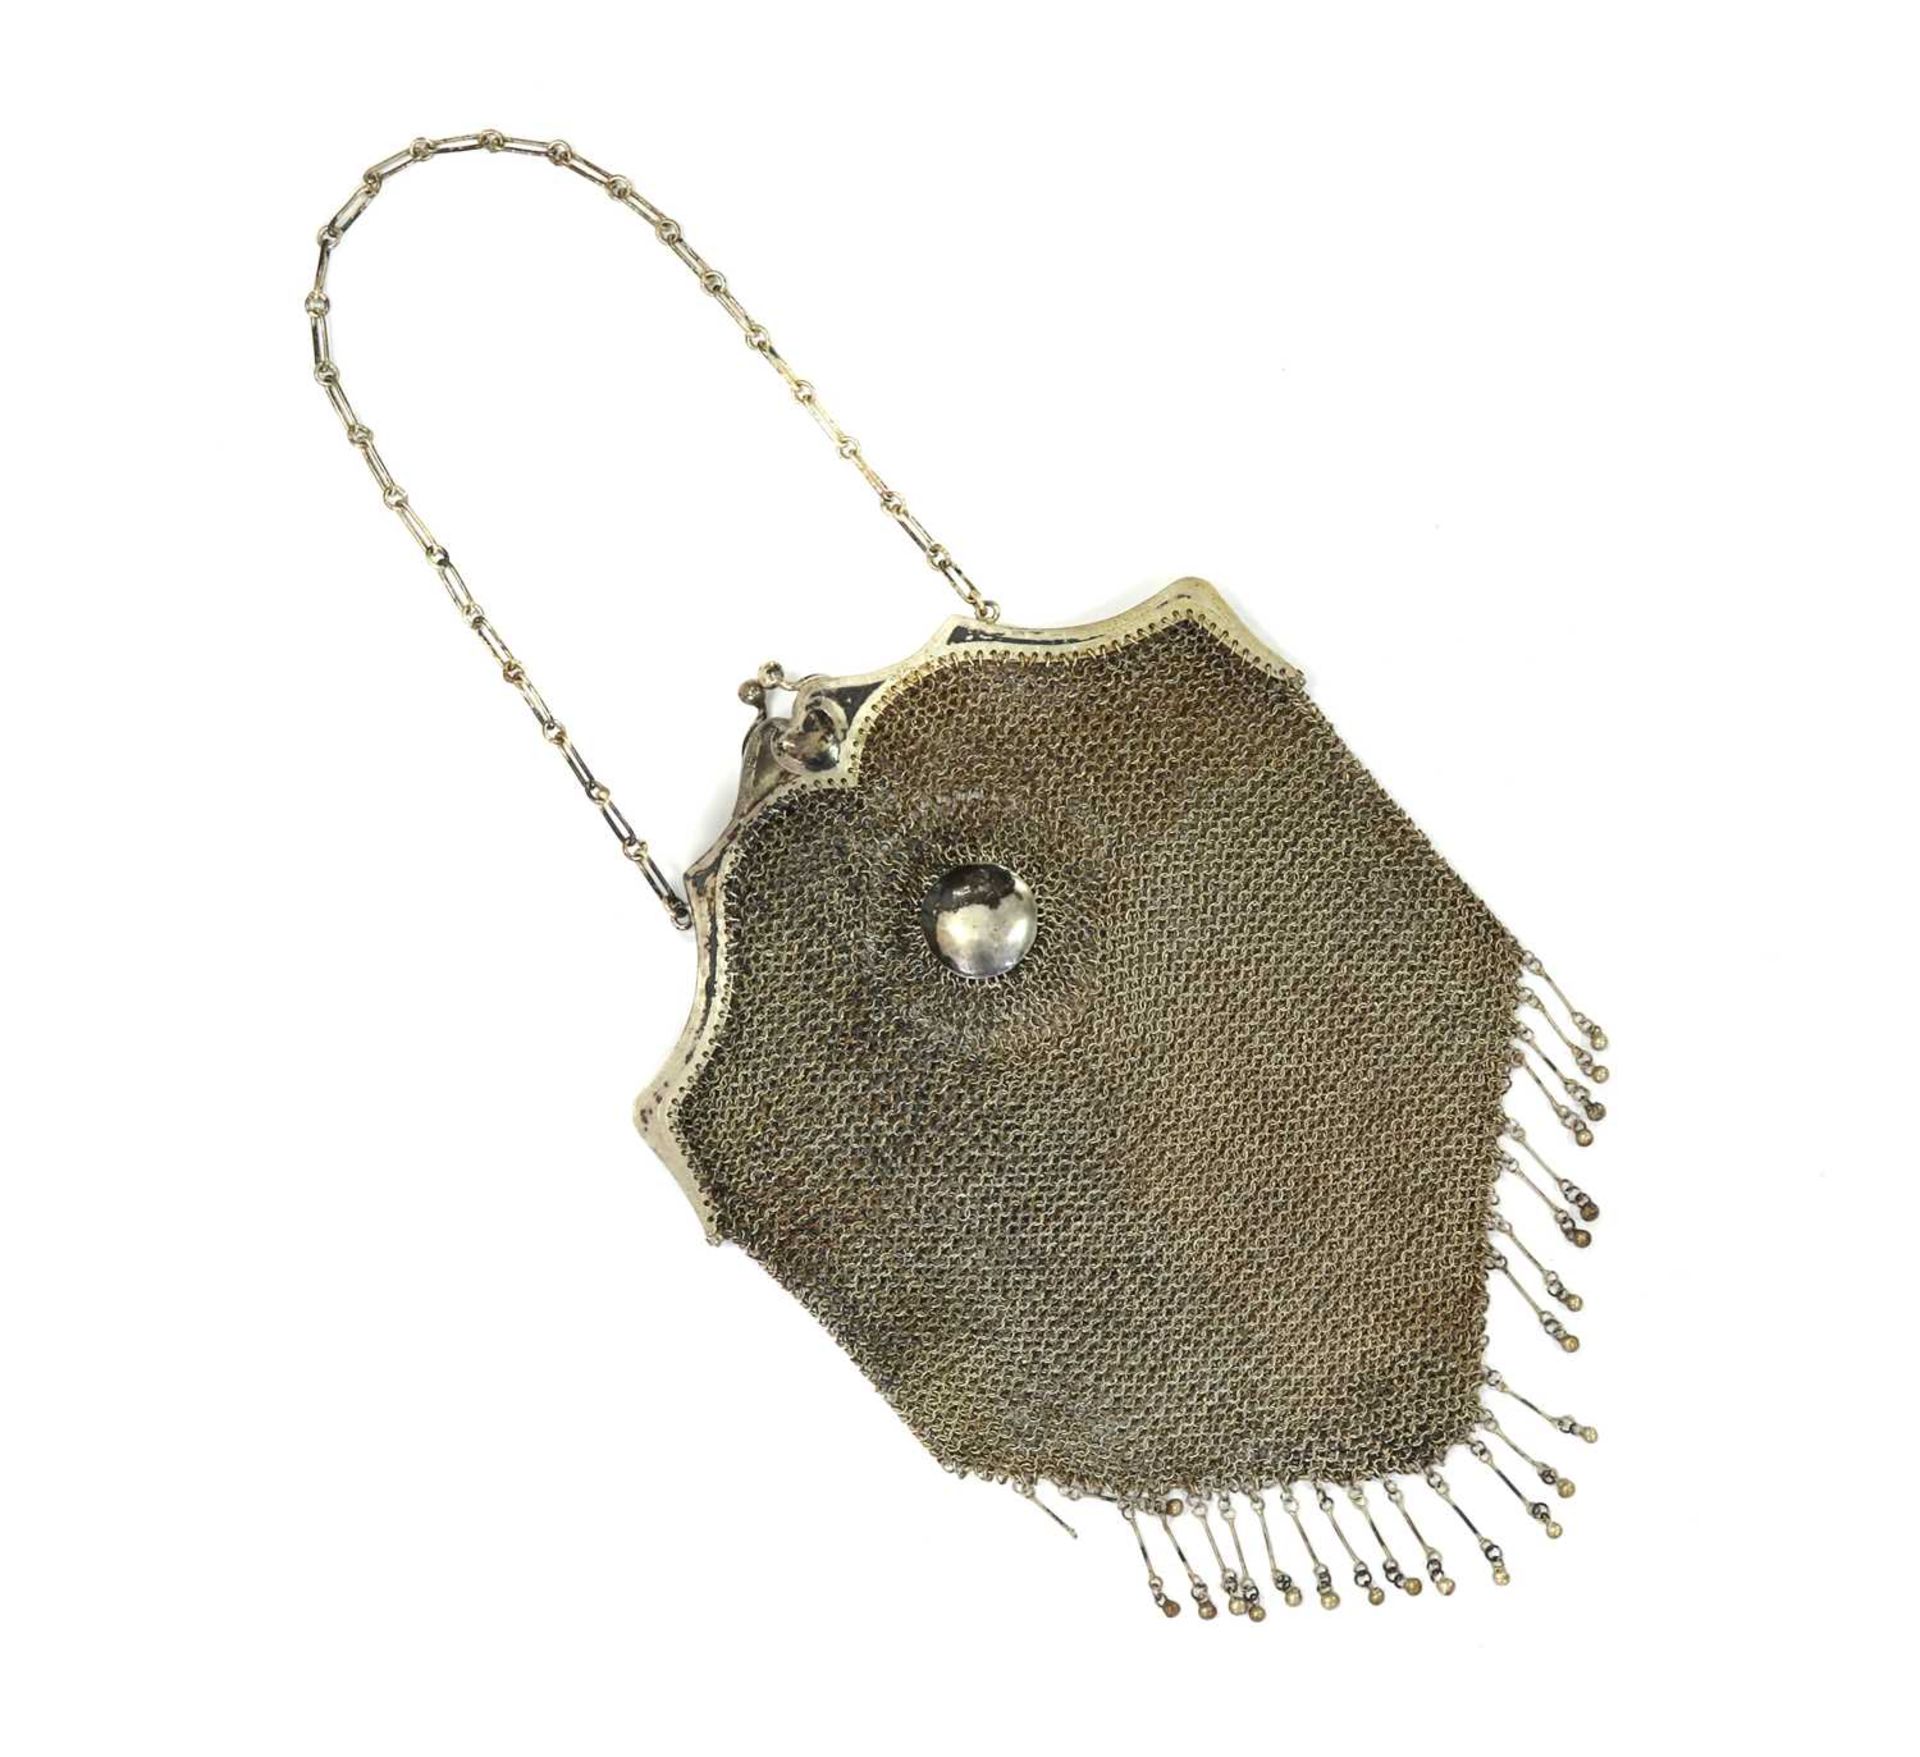 A lowgrade silver mesh purse,